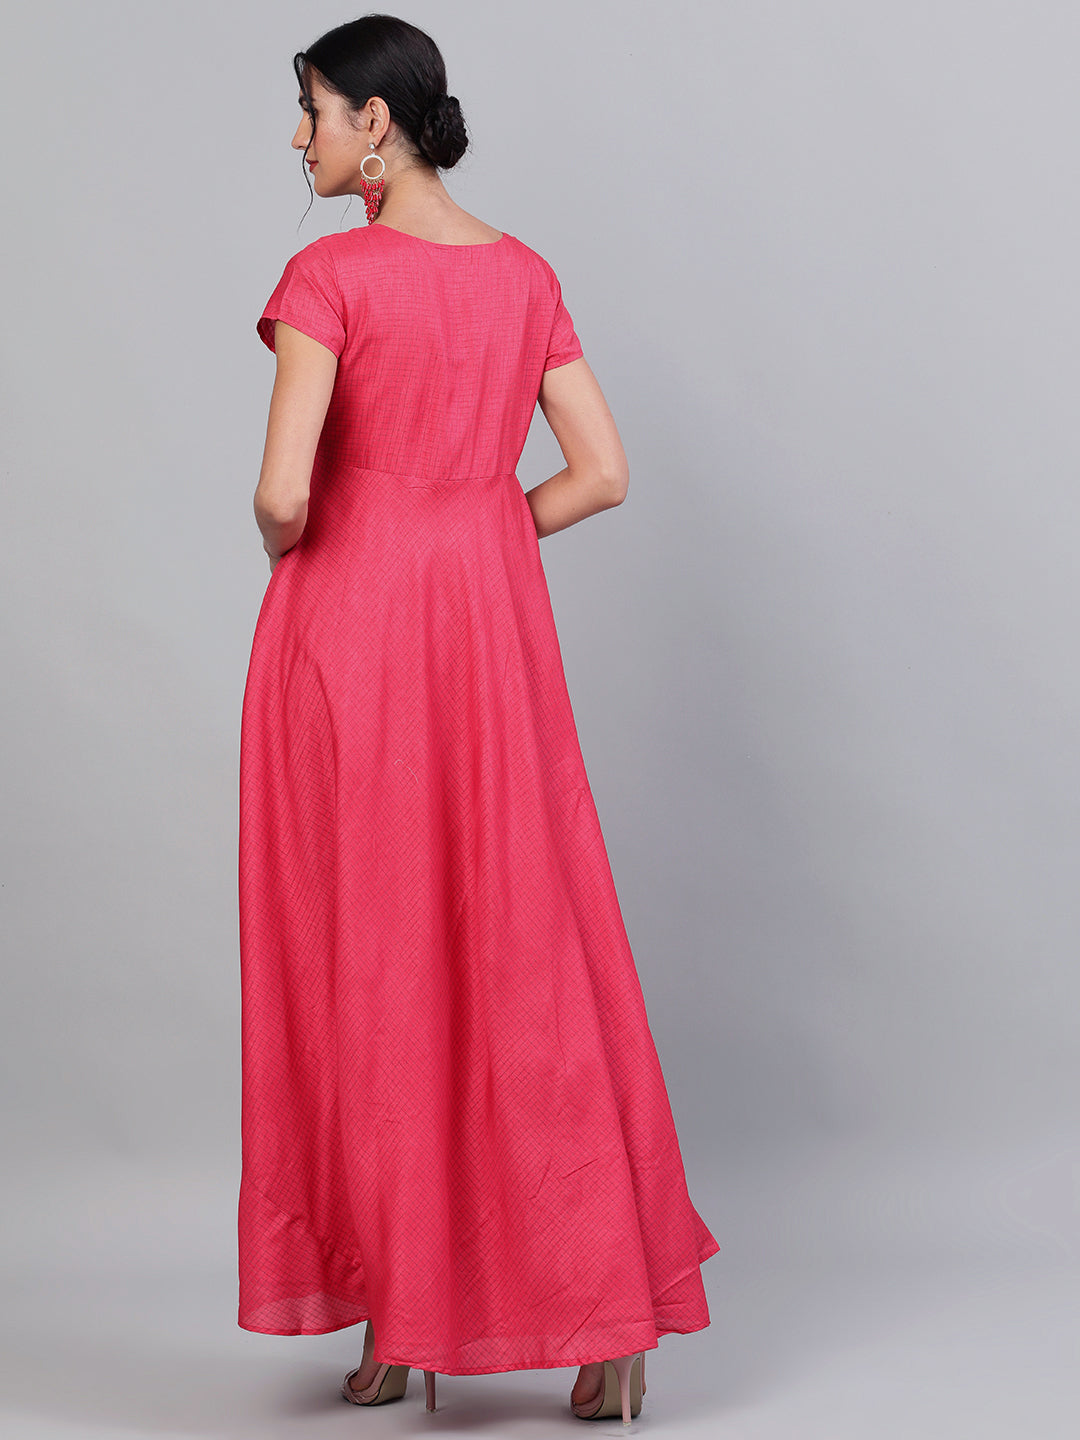 Pink Flared Maxi Dress